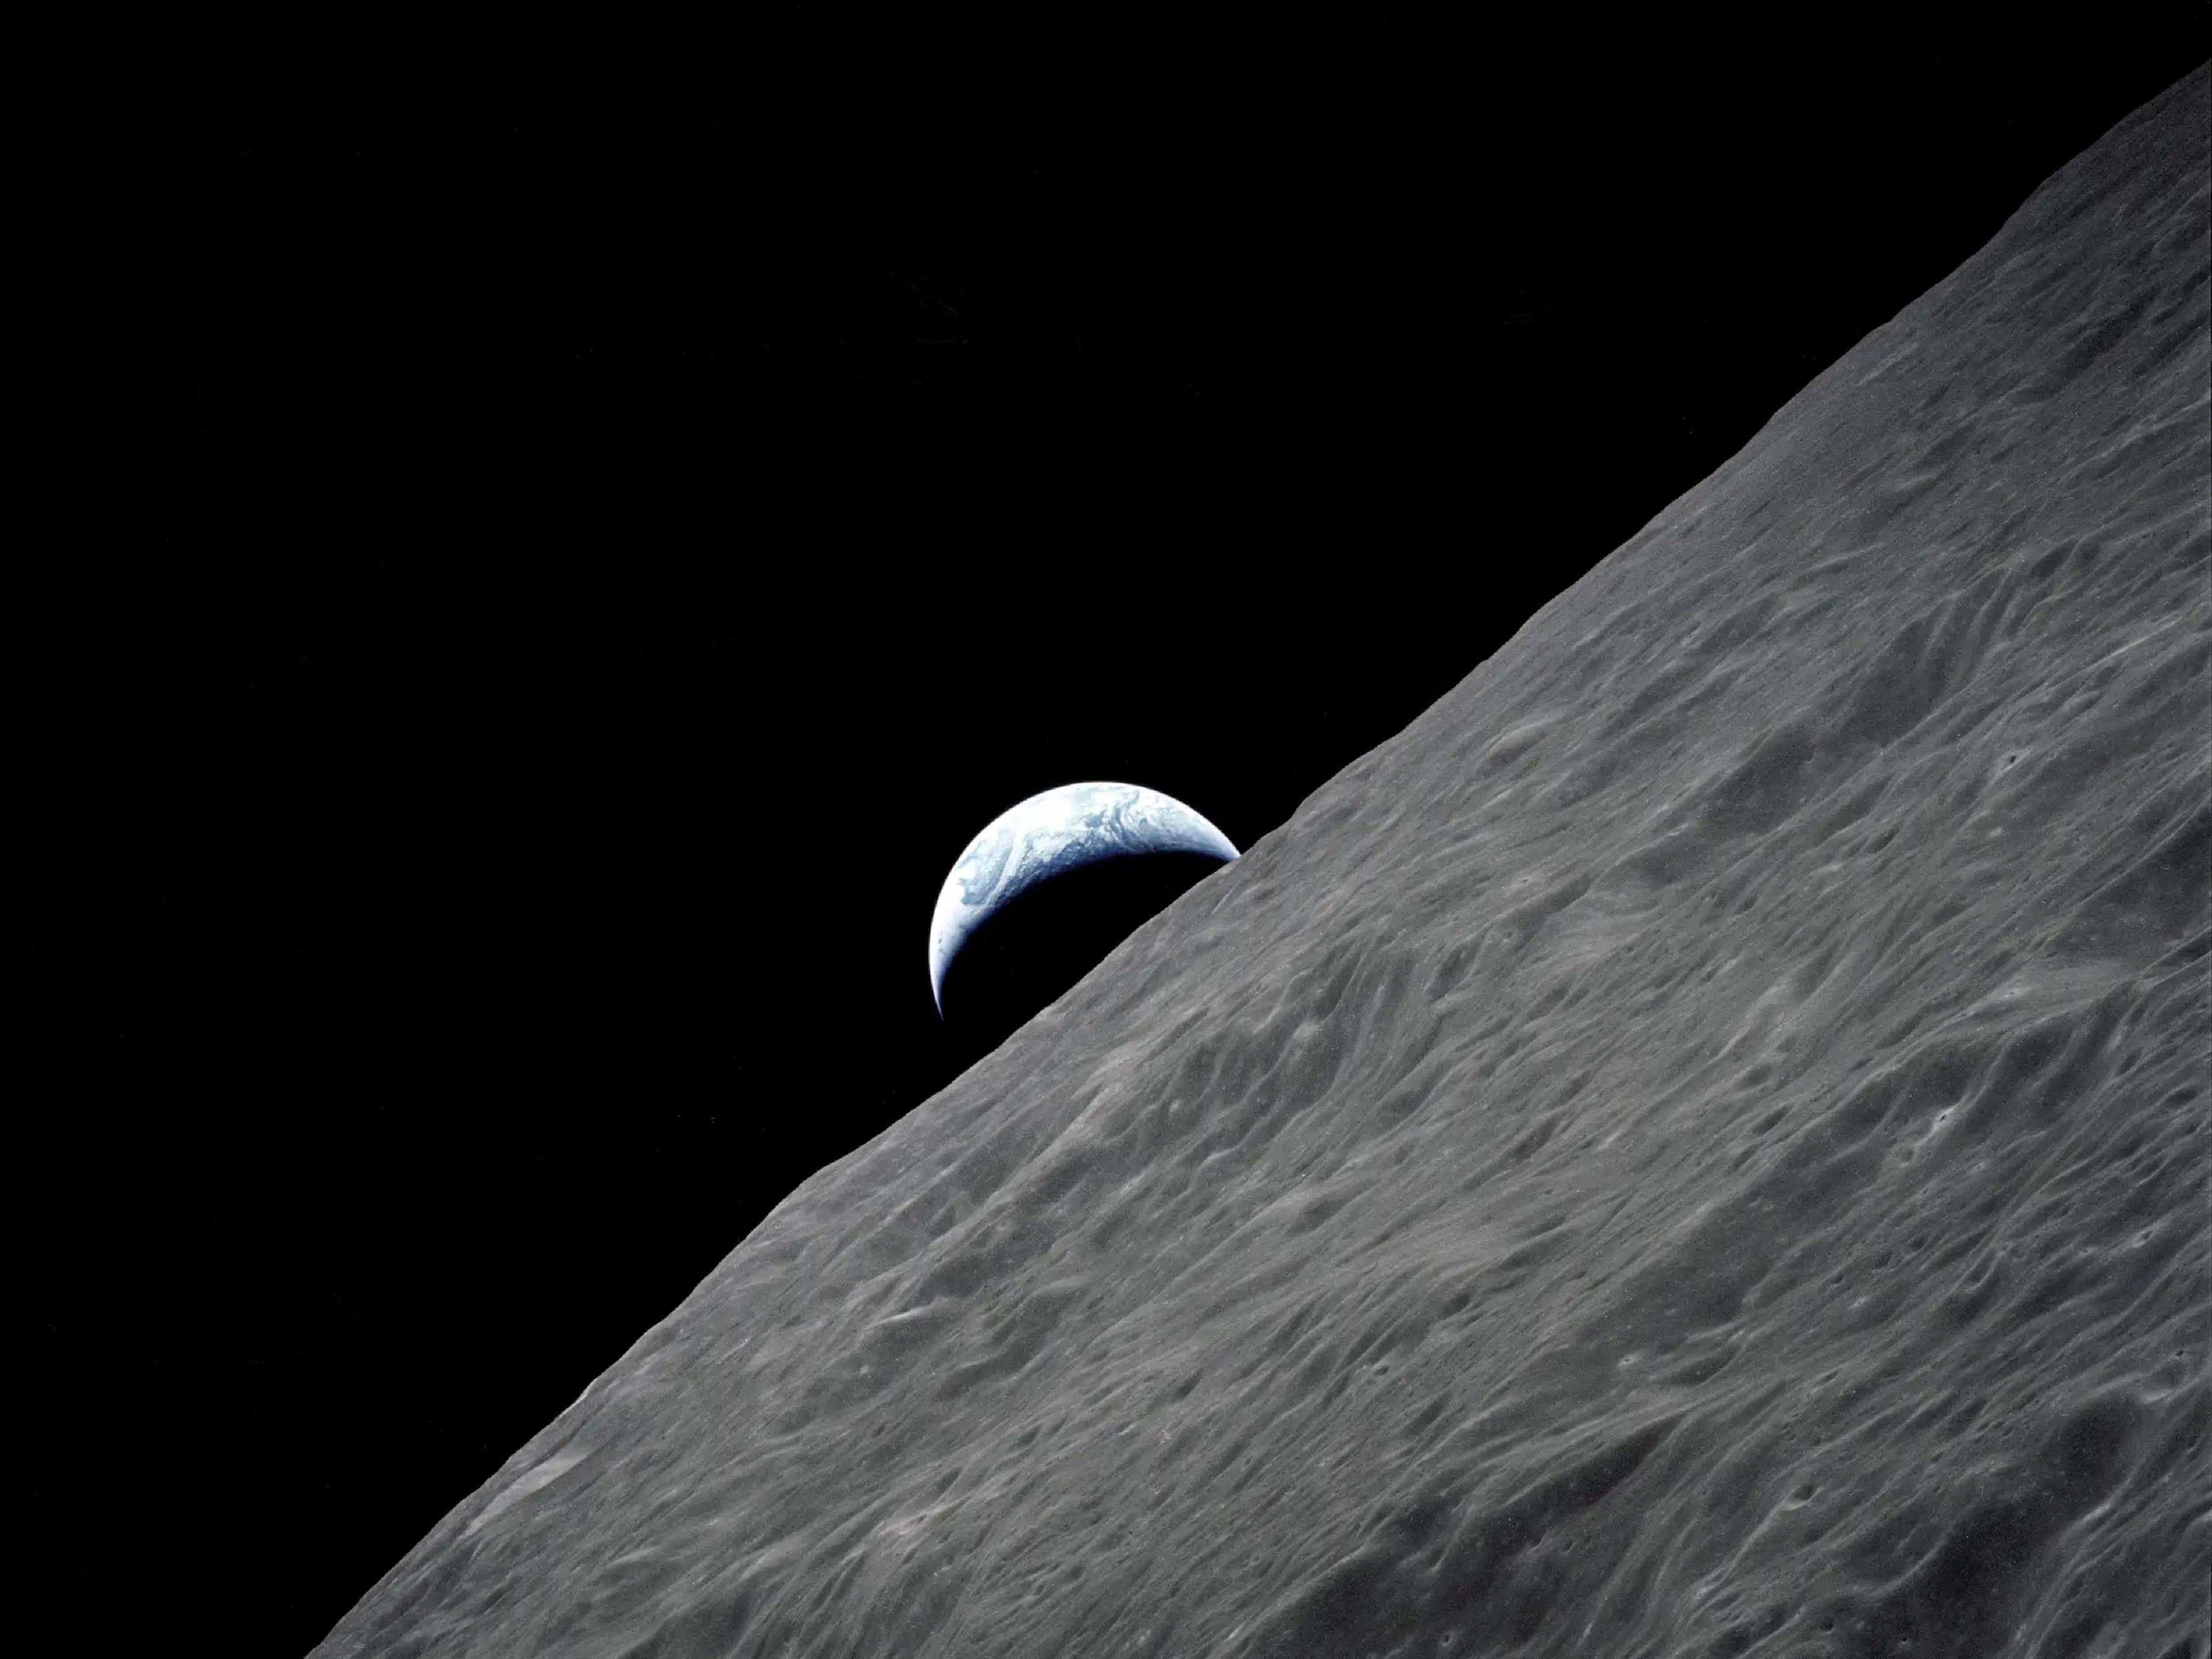 La Tierra vista desde la Luna